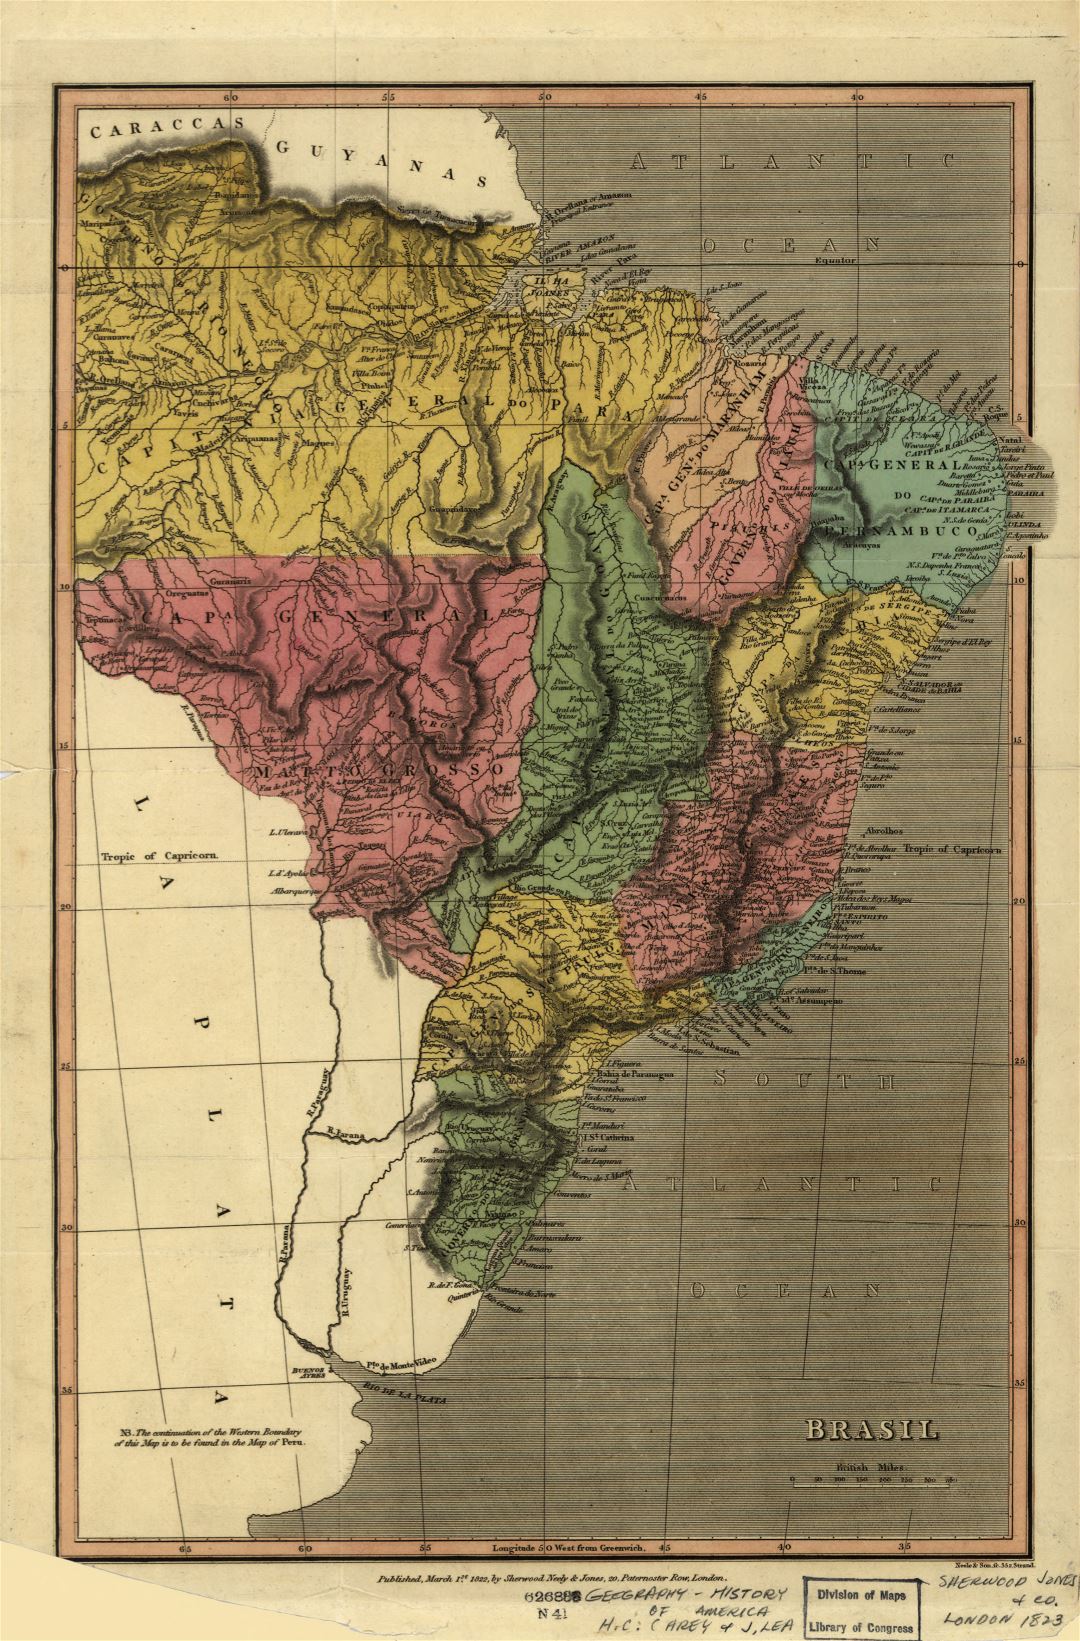 Grande detallado mapa antiguo de Brasil con otras marcas - 1822